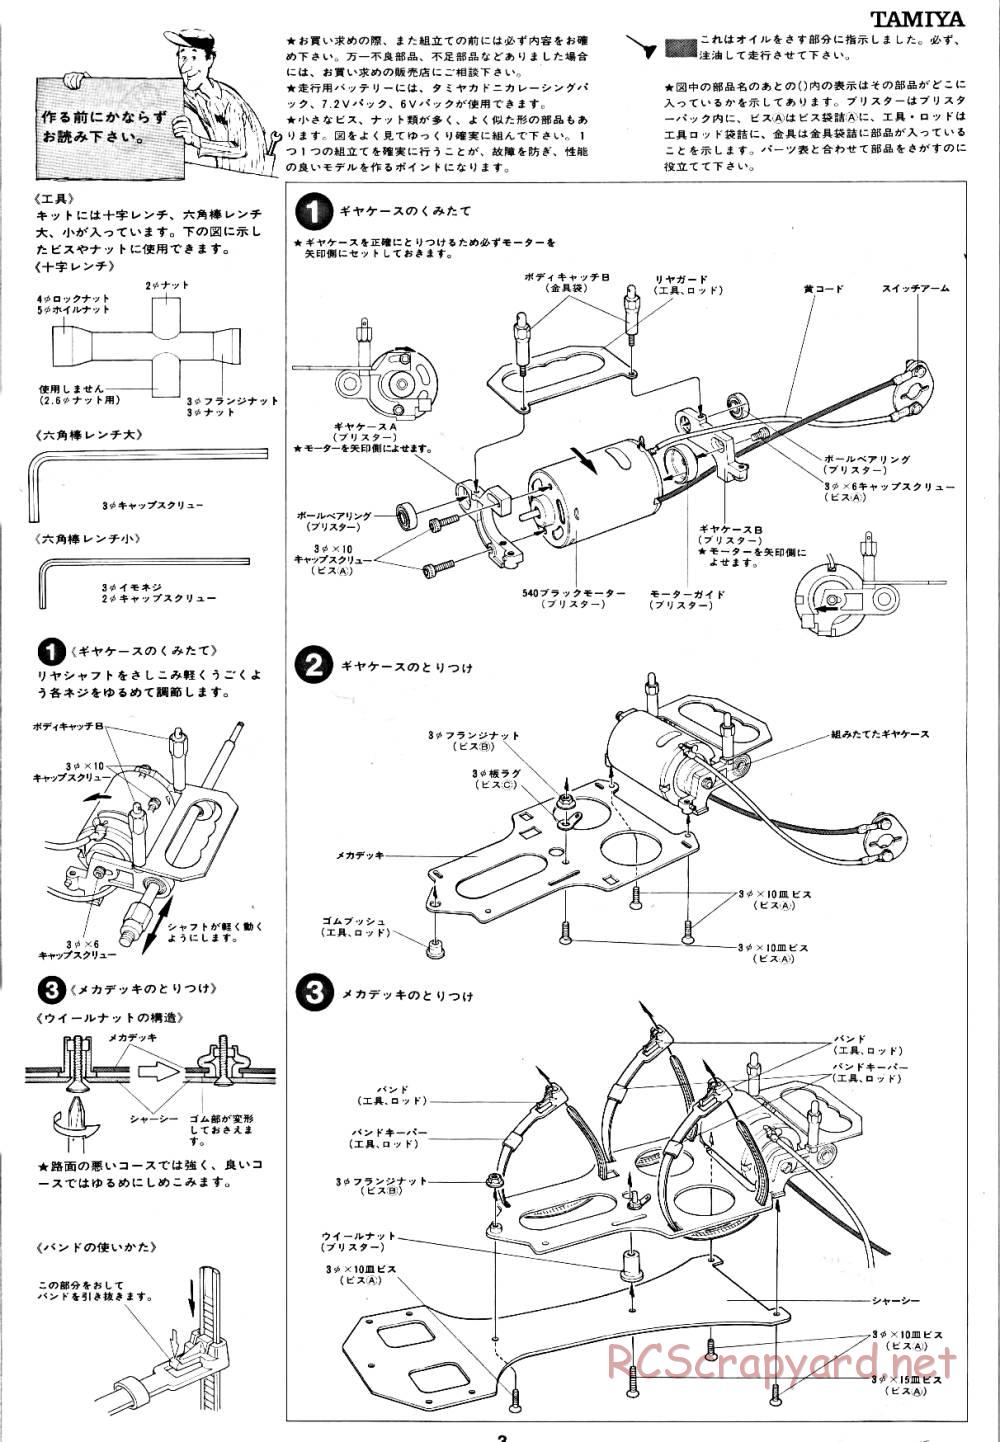 Tamiya - Tornado - RM MK.3 - 58032 - Manual - Page 3